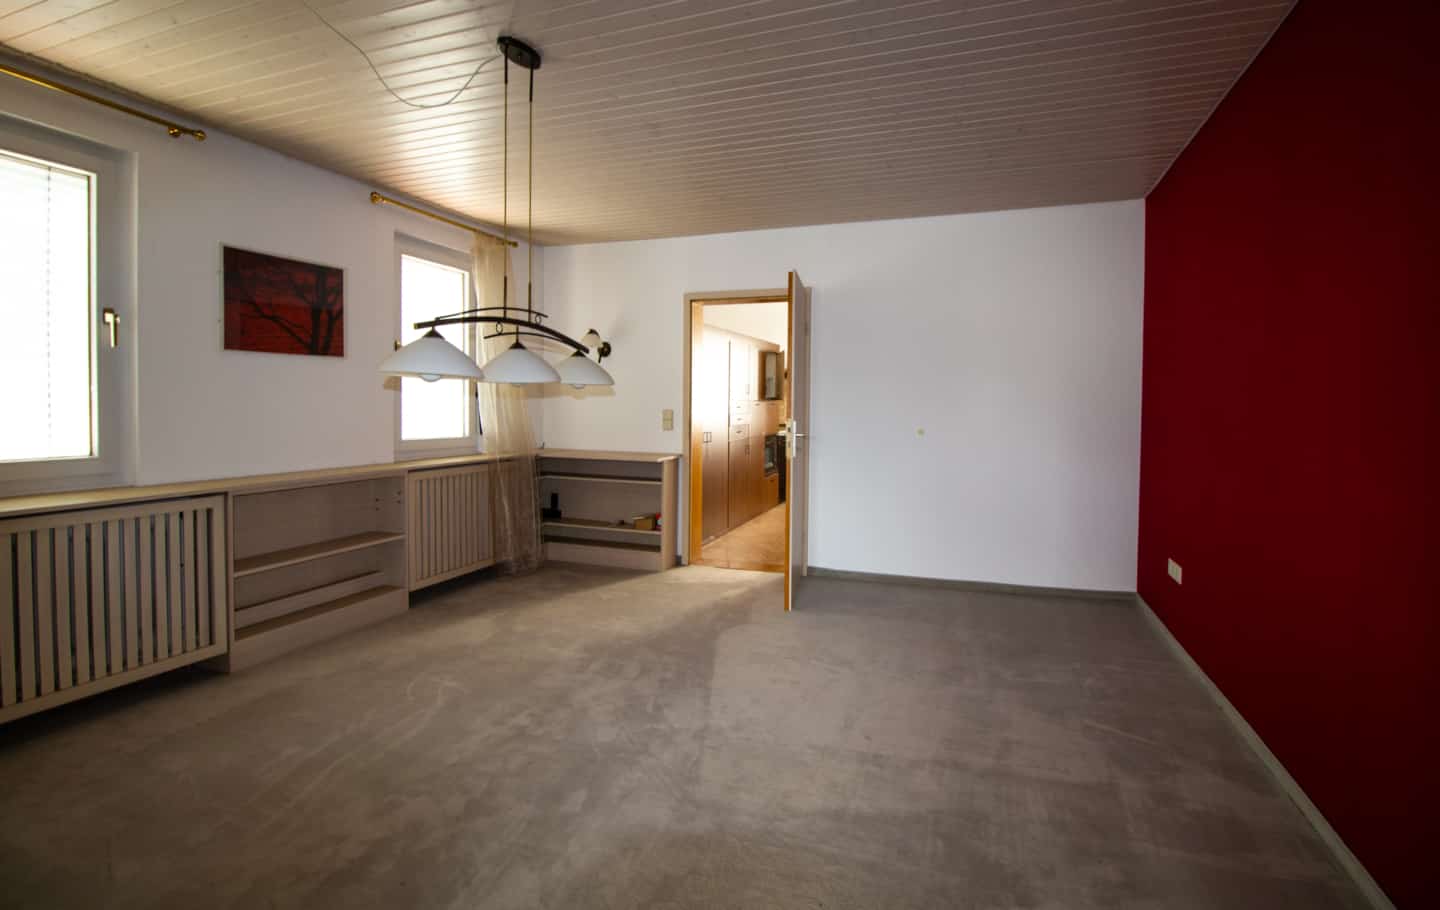 Projektiertes Wohnhaus zu verkaufen Albstadt Lautlingen